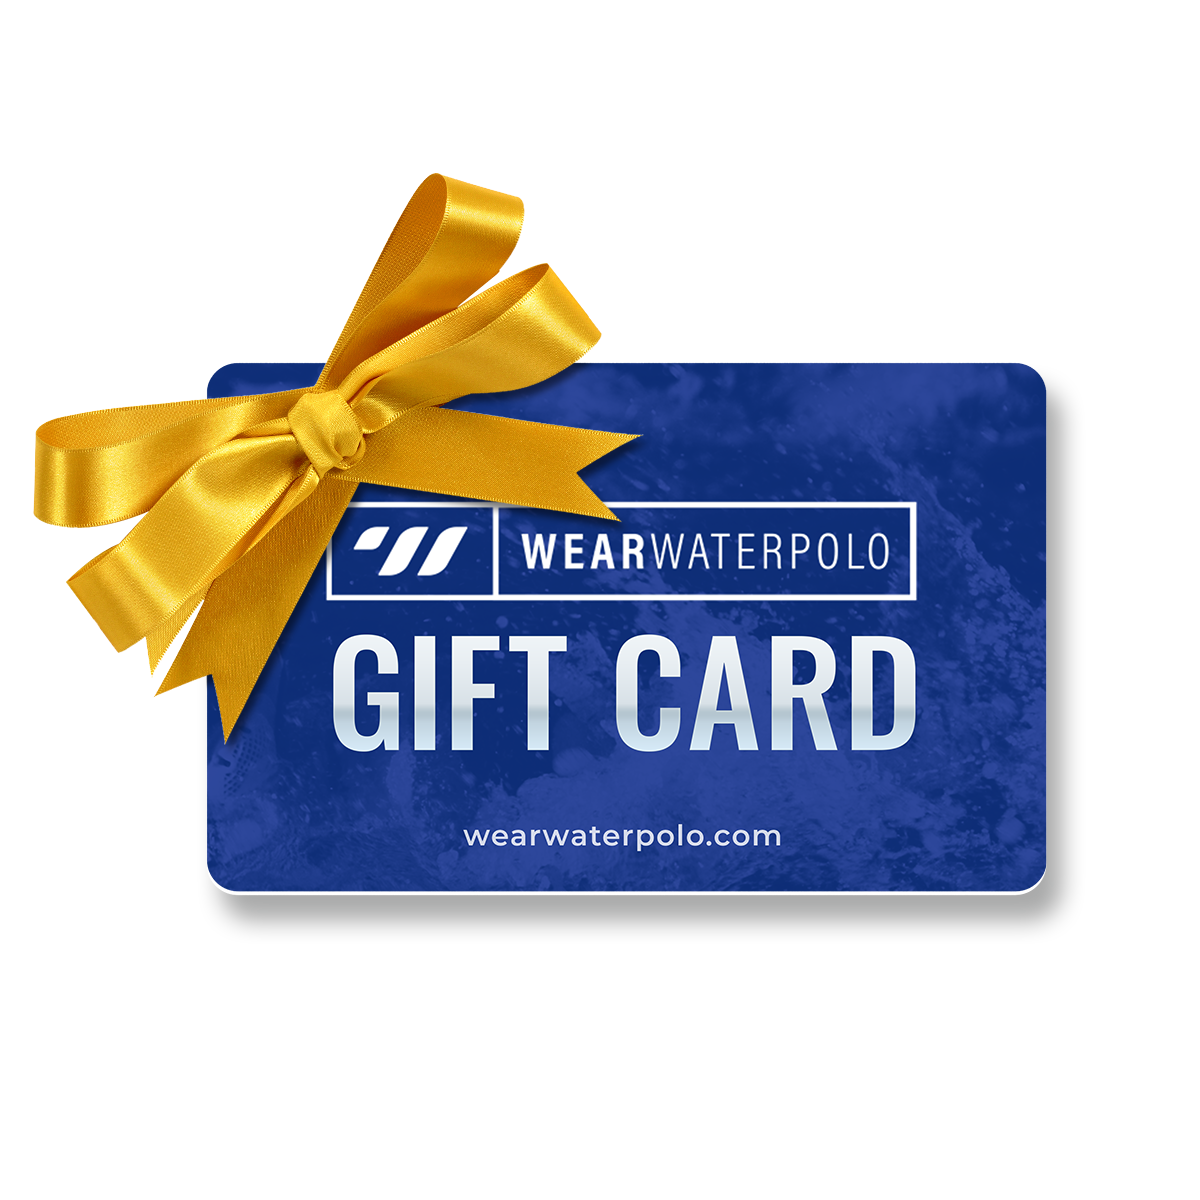 Wear Waterpolo Gift card